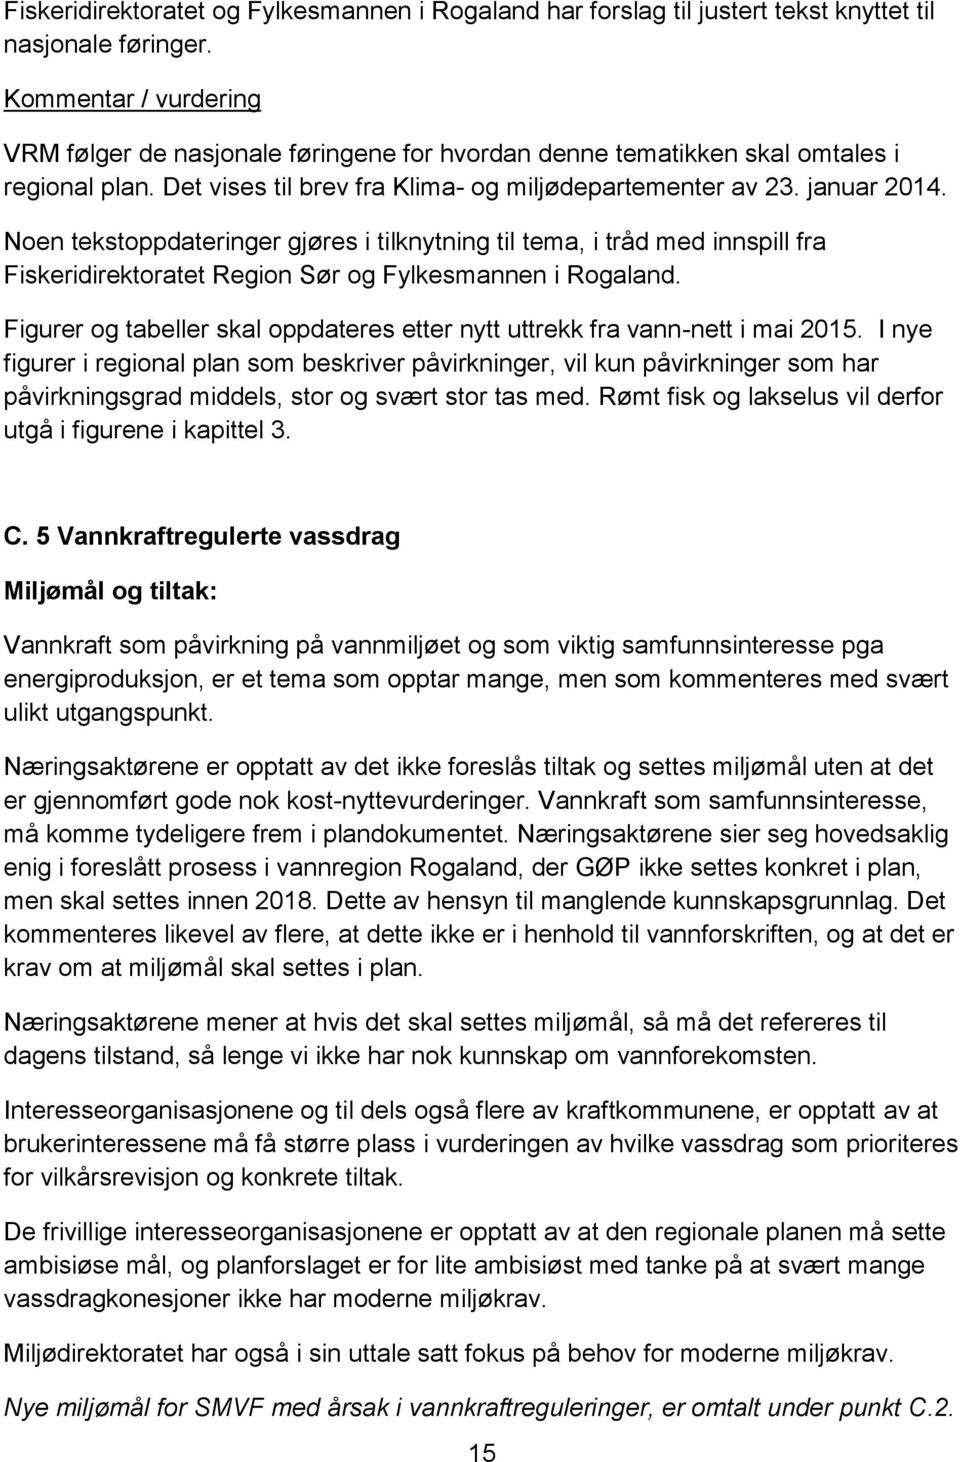 Noen tekstoppdateringer gjøres i tilknytning til tema, i tråd med innspill fra Fiskeridirektoratet Region Sør og Fylkesmannen i Rogaland.